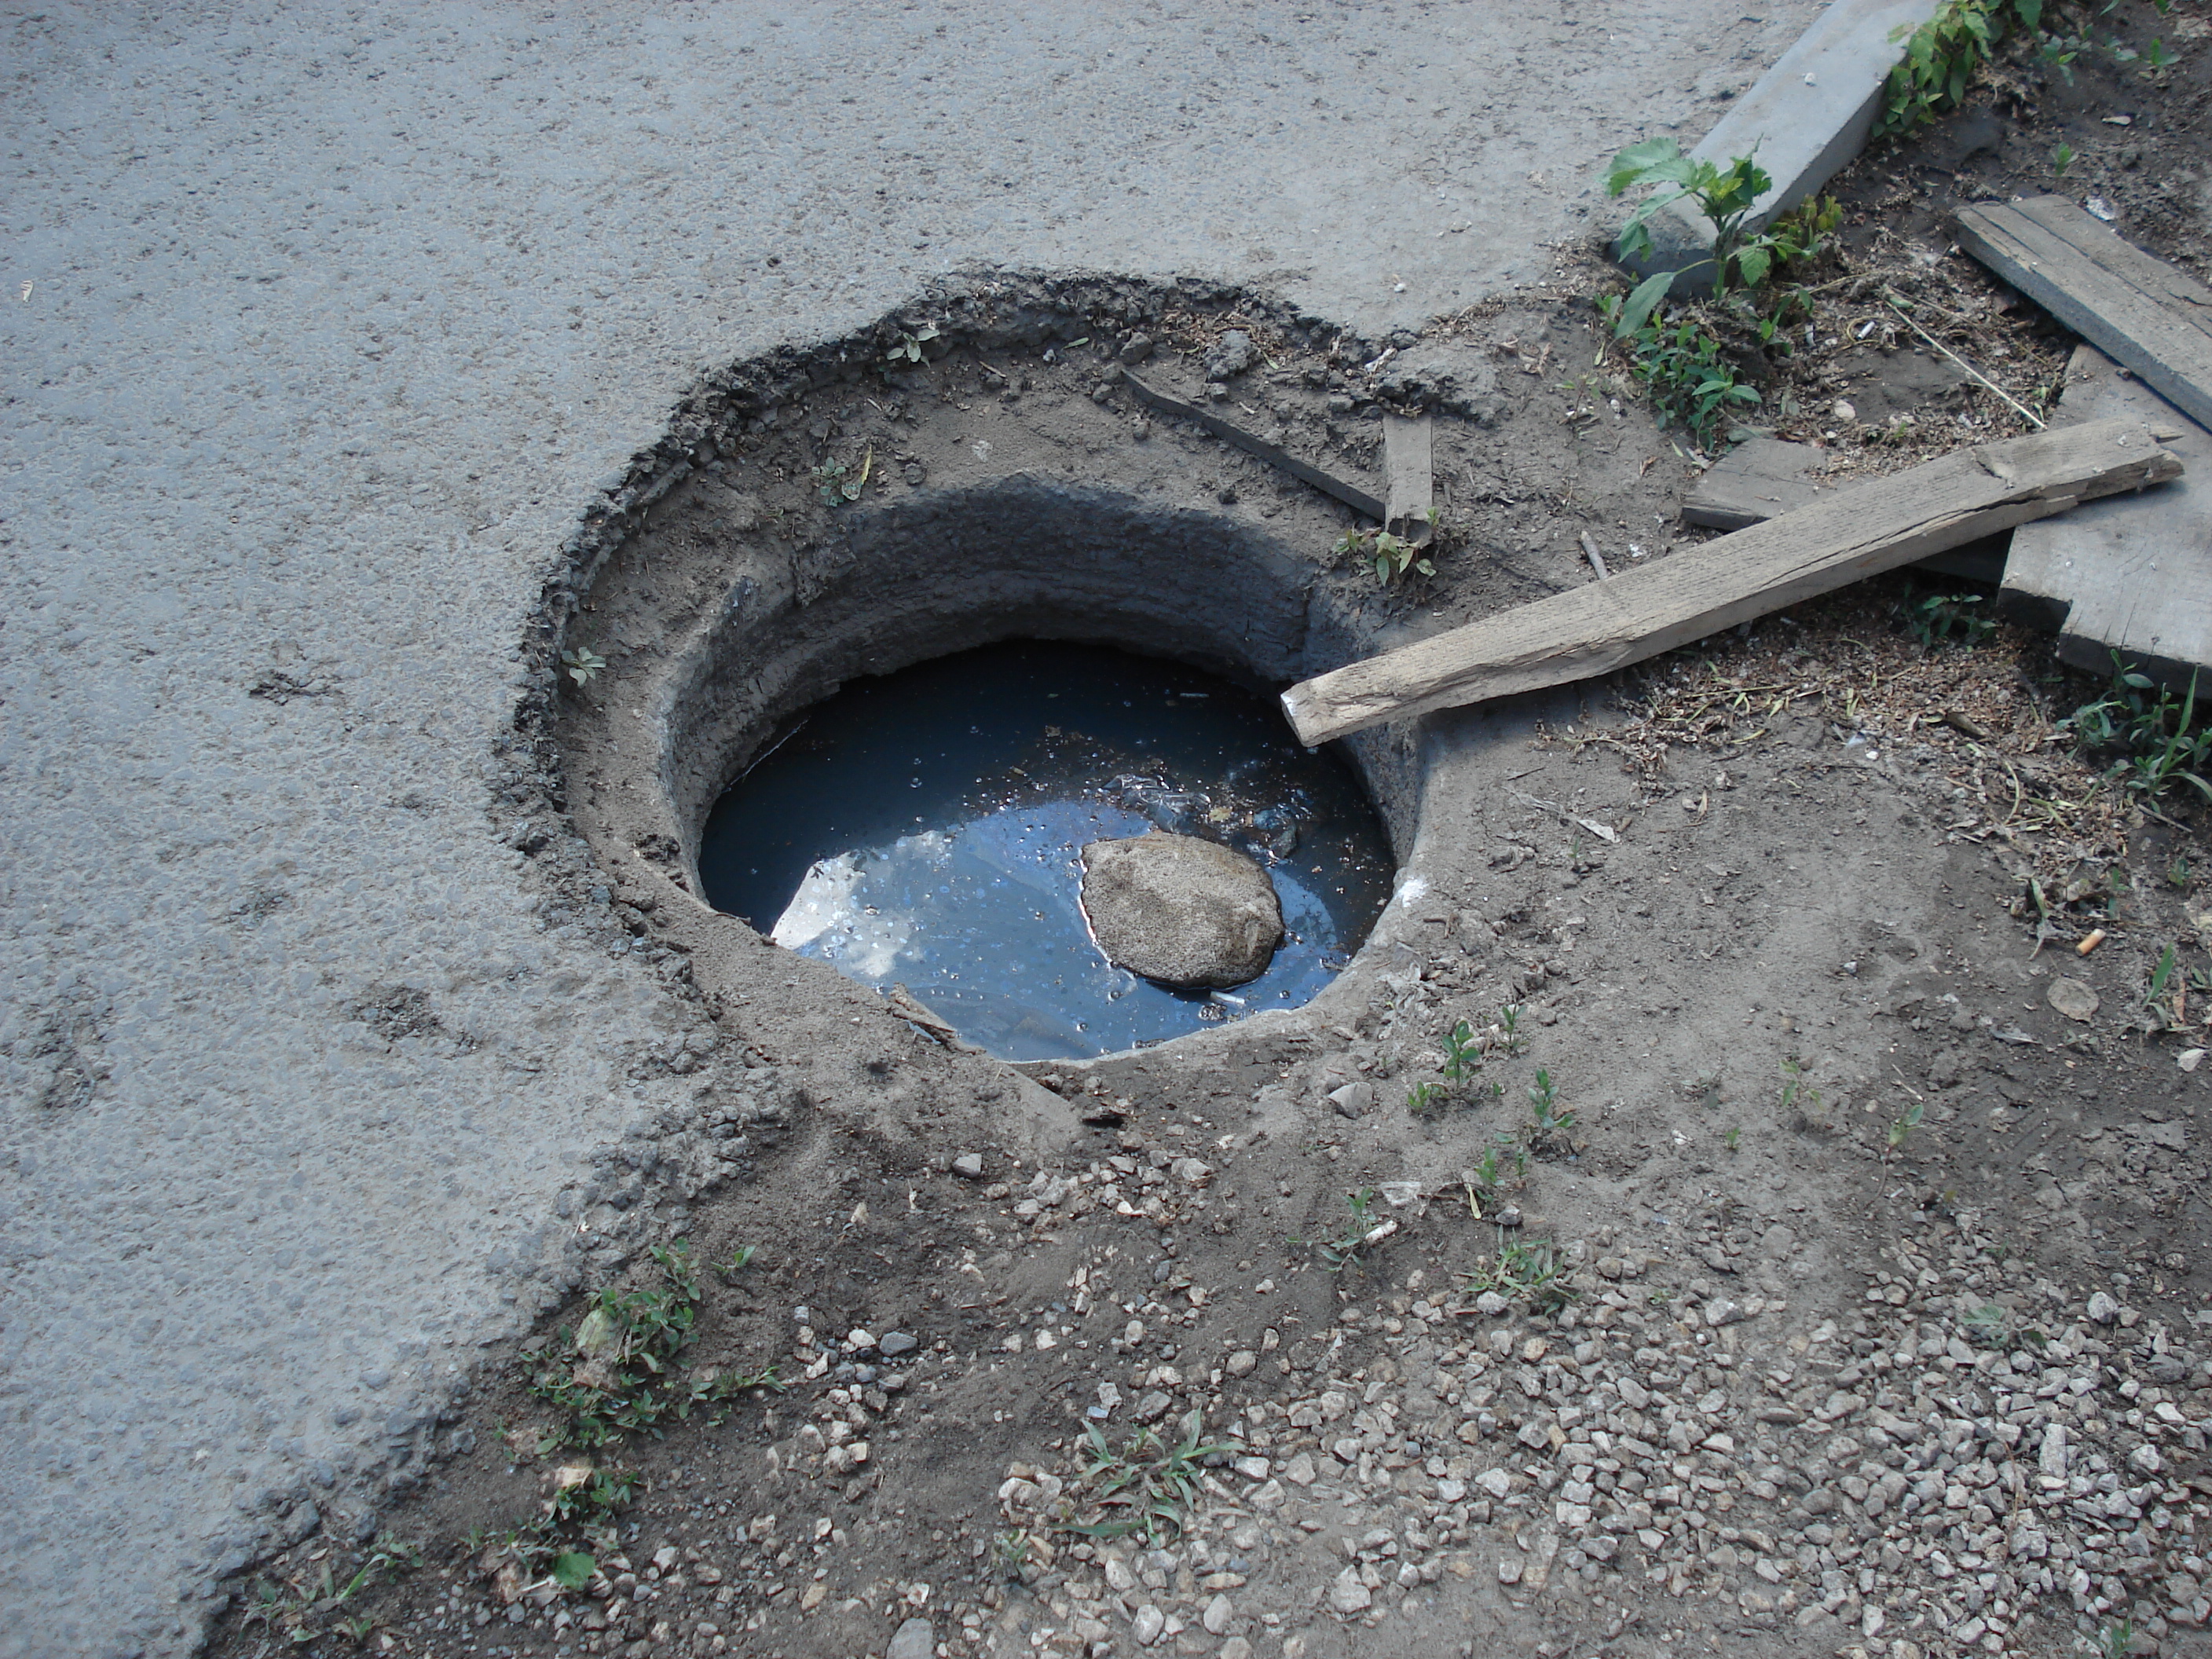 Открытый канализационный люк у дома 150А по ул. Садовой в г. Самаре на 17.06.16